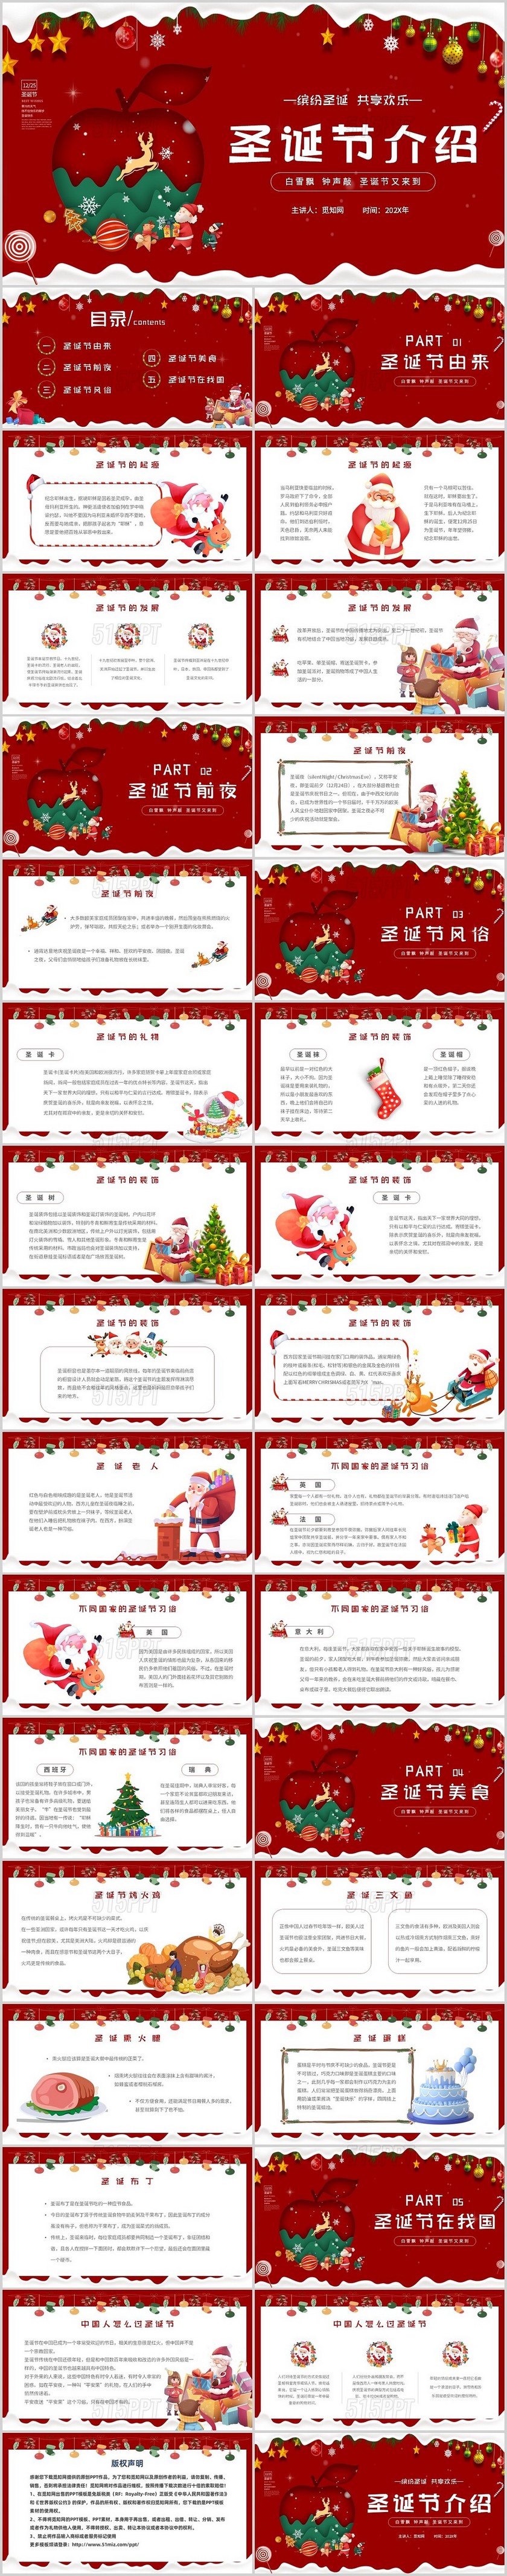 红色卡通简约圣诞节介绍缤纷圣诞共享欢乐主题PPT模板